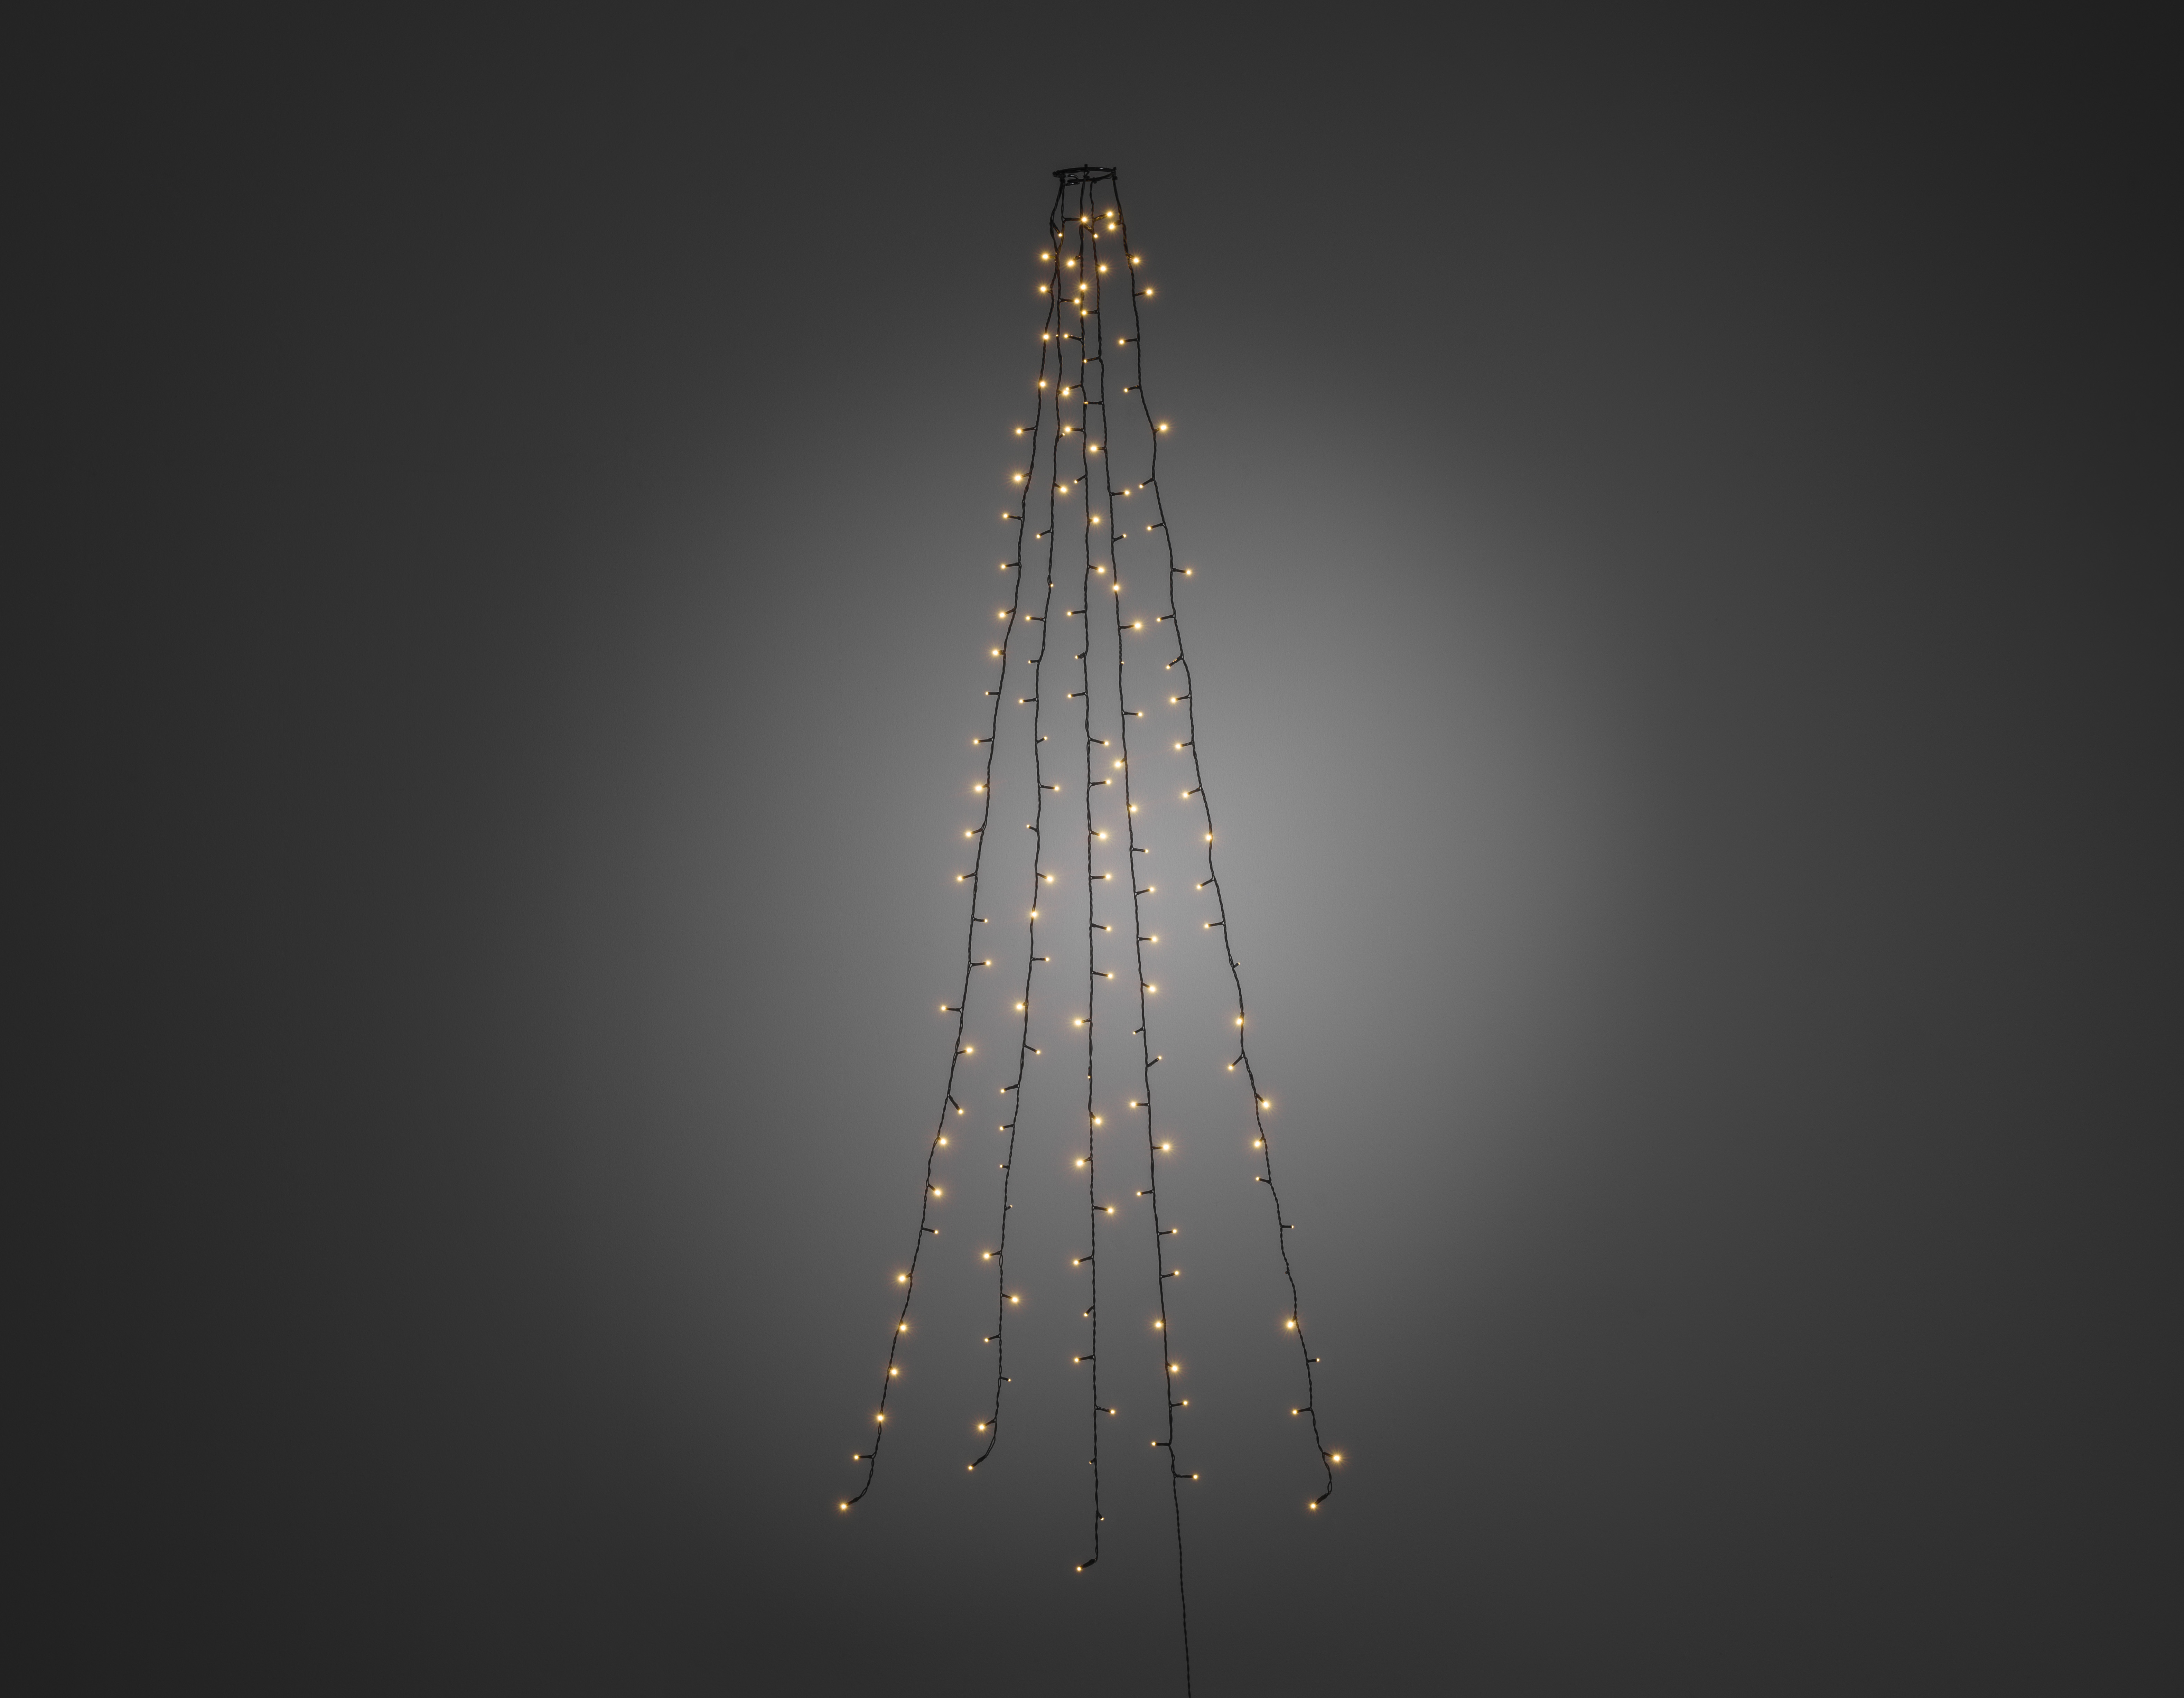 Kerstboomverlichting 5 strengen 180cm